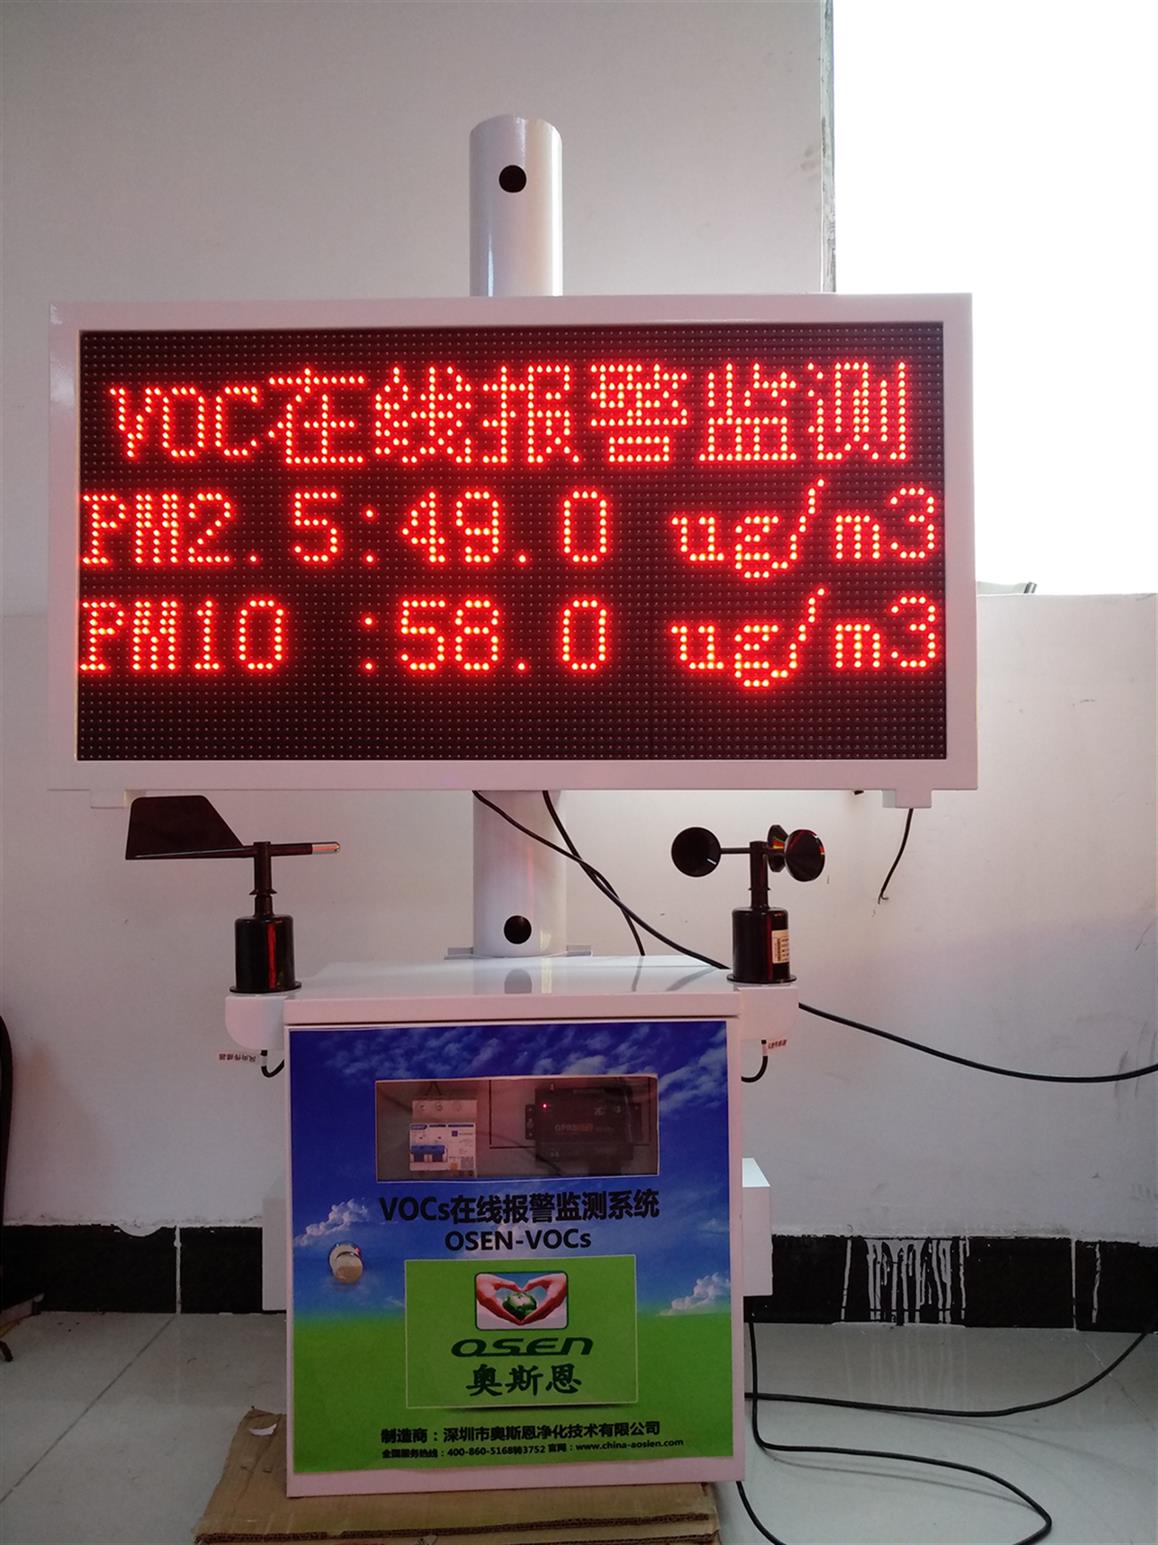 南京新型VOC在线监测